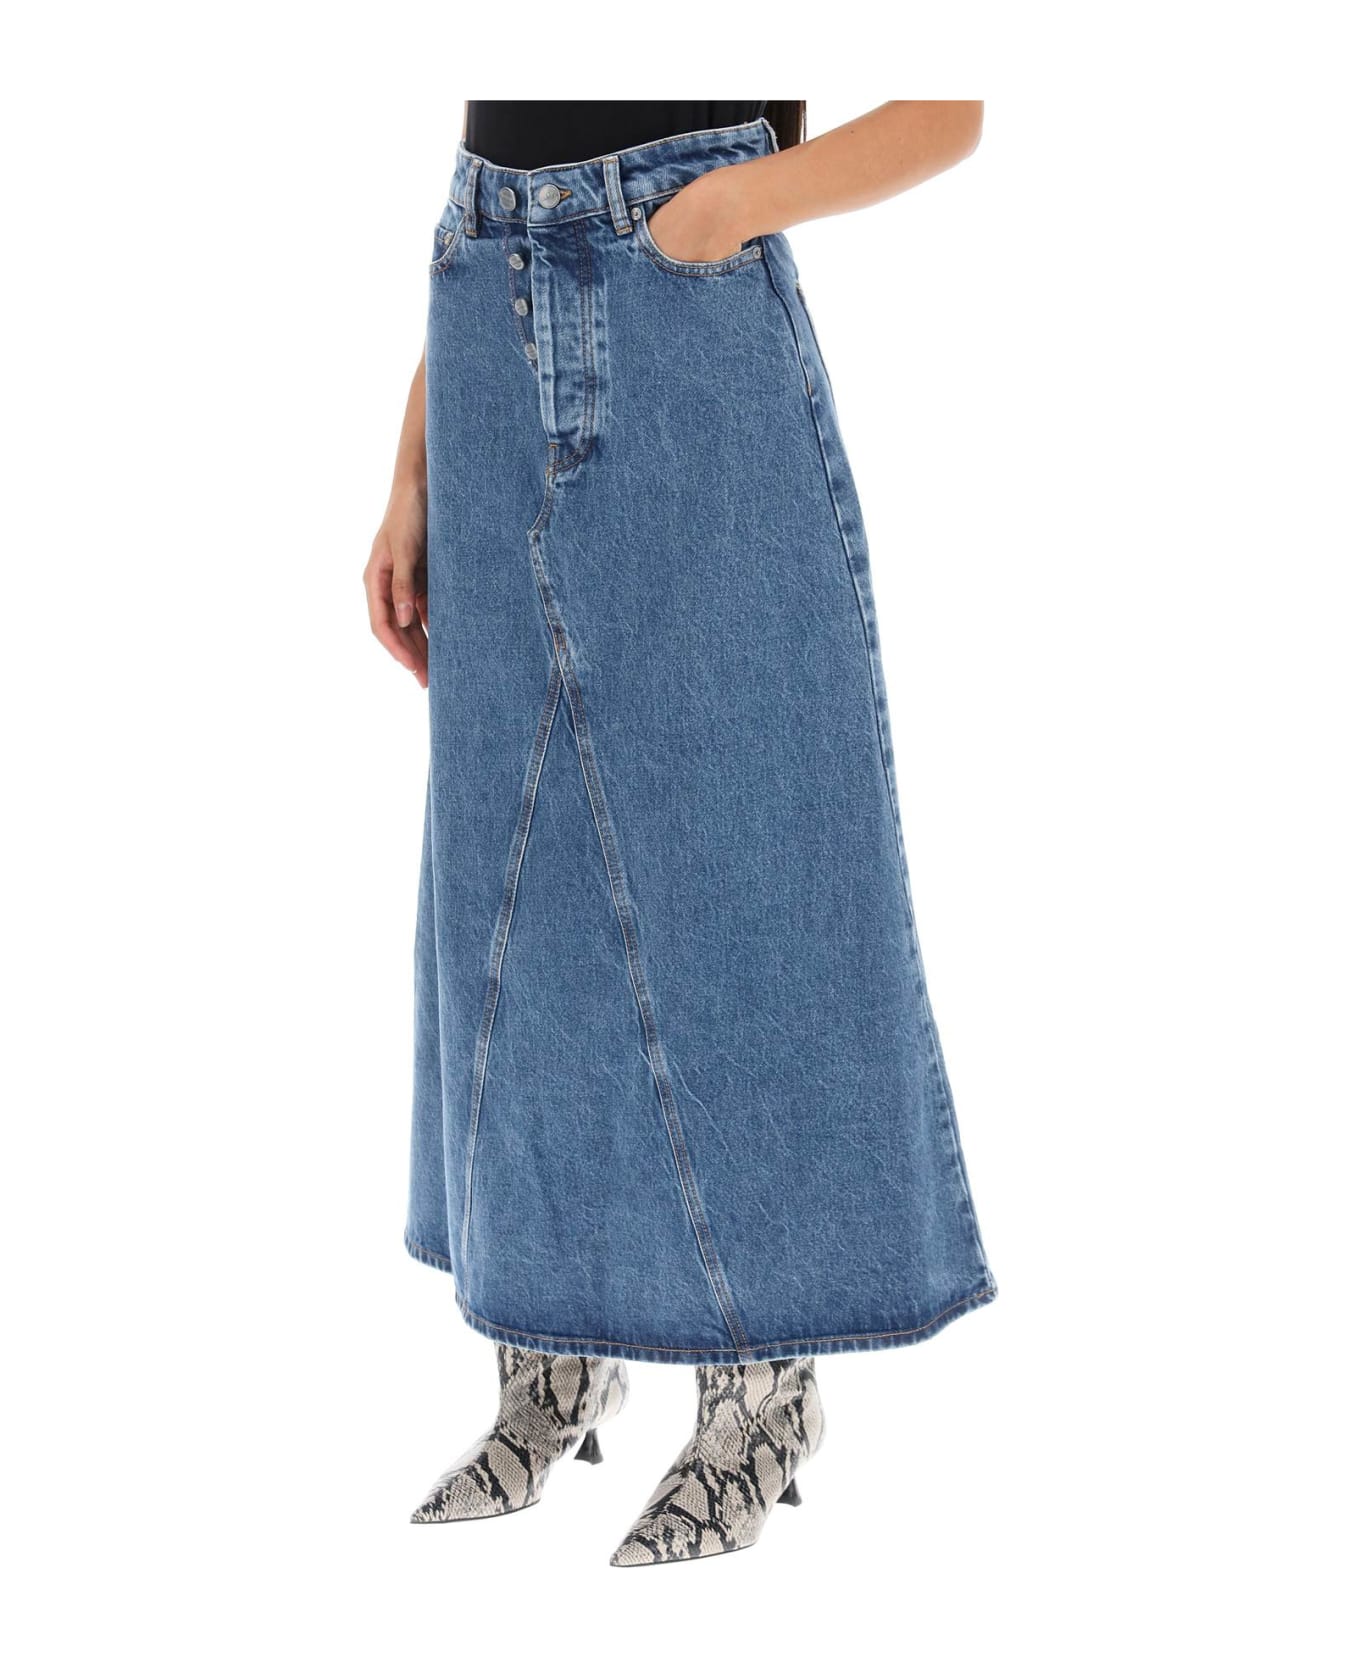 Ganni Long Denim Skirt - MID BLUE STONE (Light blue) スカート